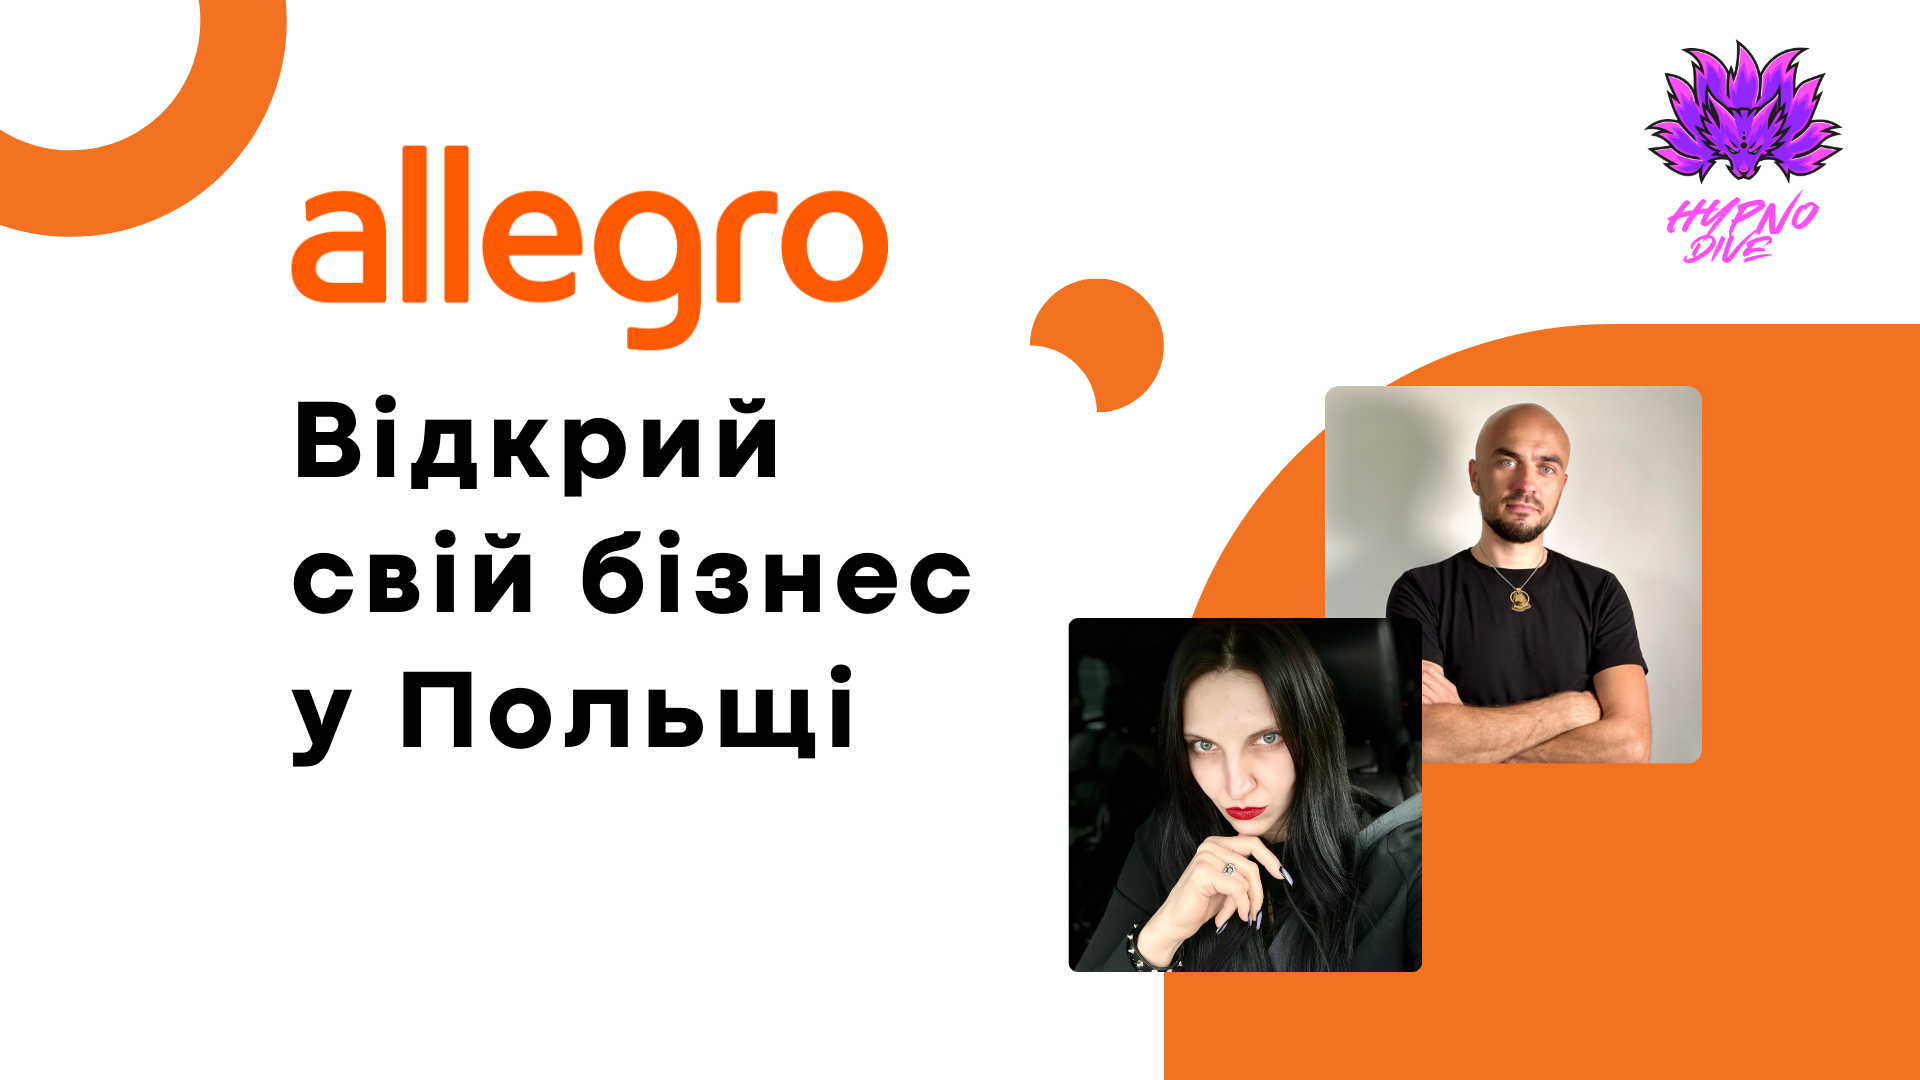 Allegro: Відкрий свій бізнес у Польщі